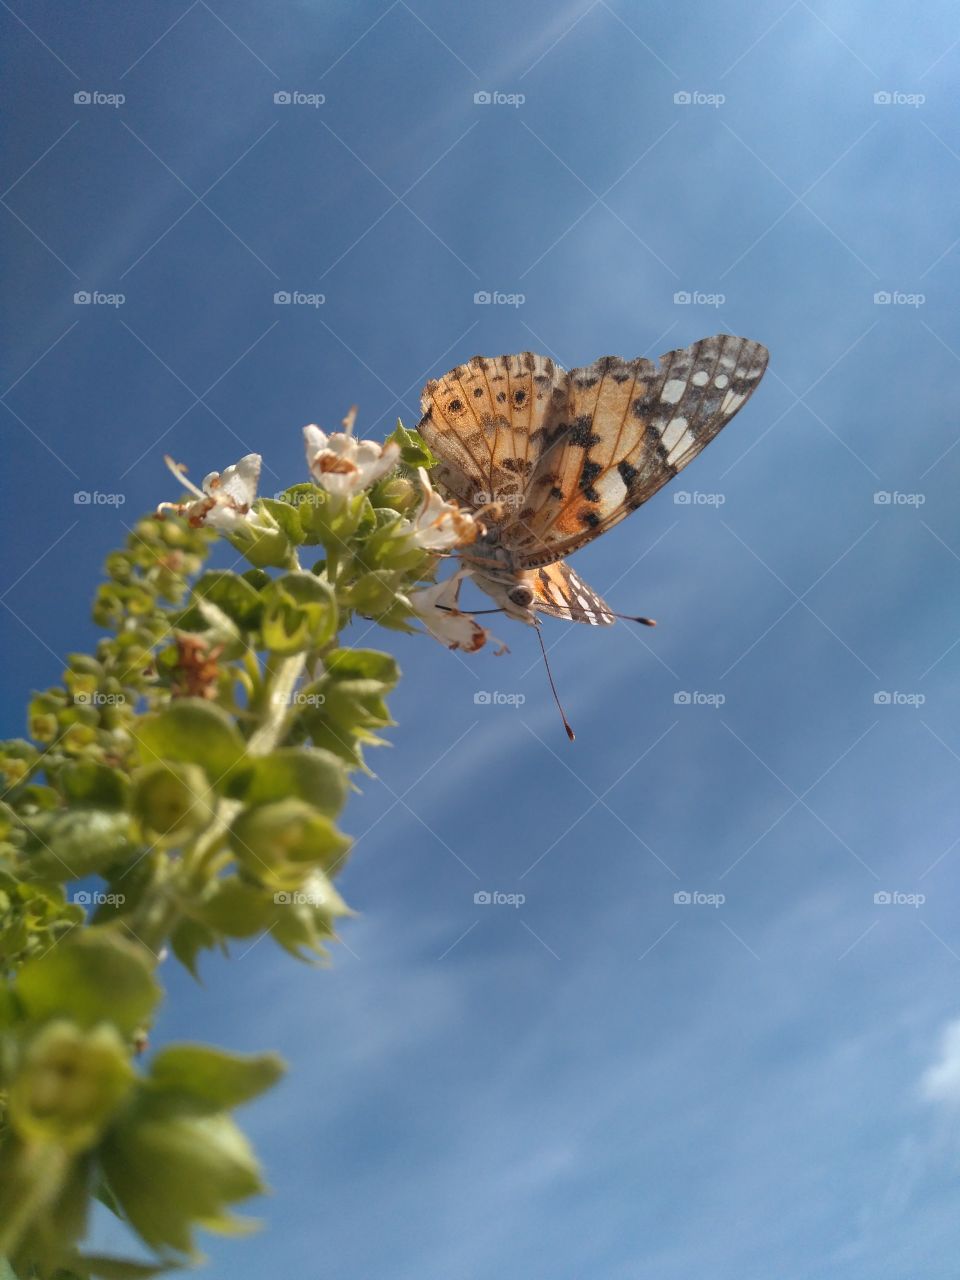 beautiful 🦋 butterfly